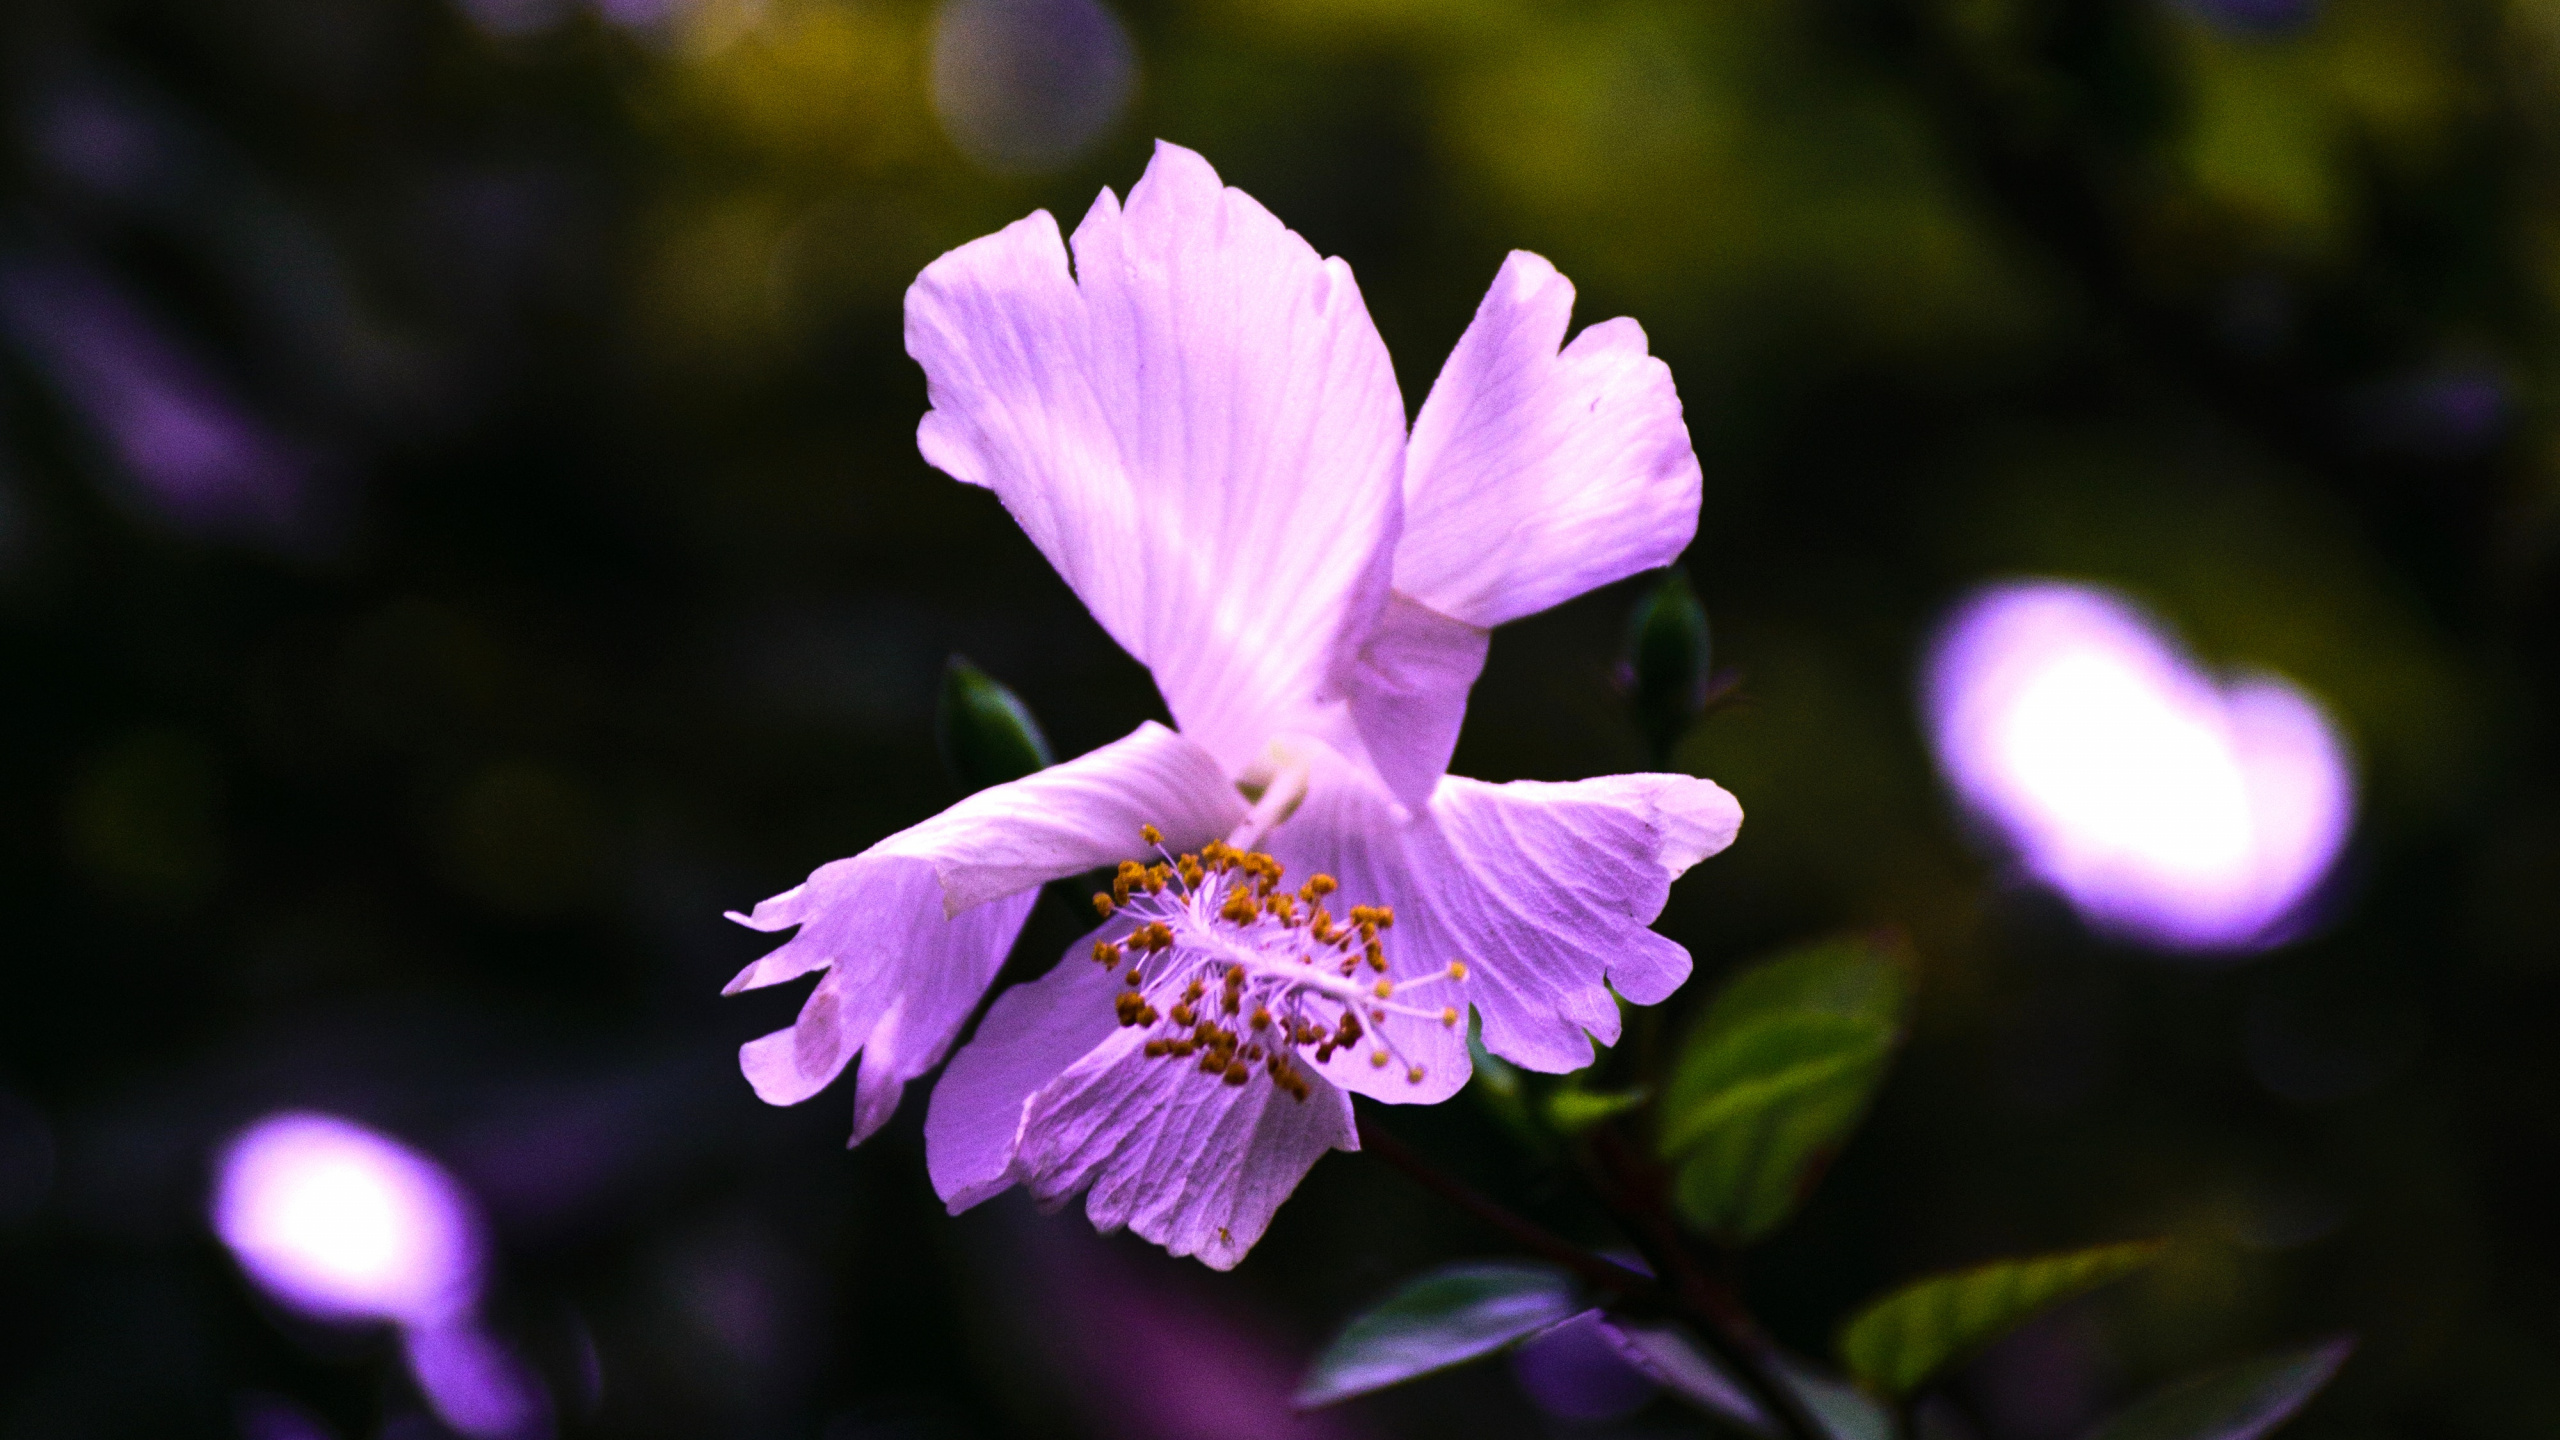 显花植物, 紫色的, 紫罗兰色, 粉红色, 弹簧 壁纸 2560x1440 允许